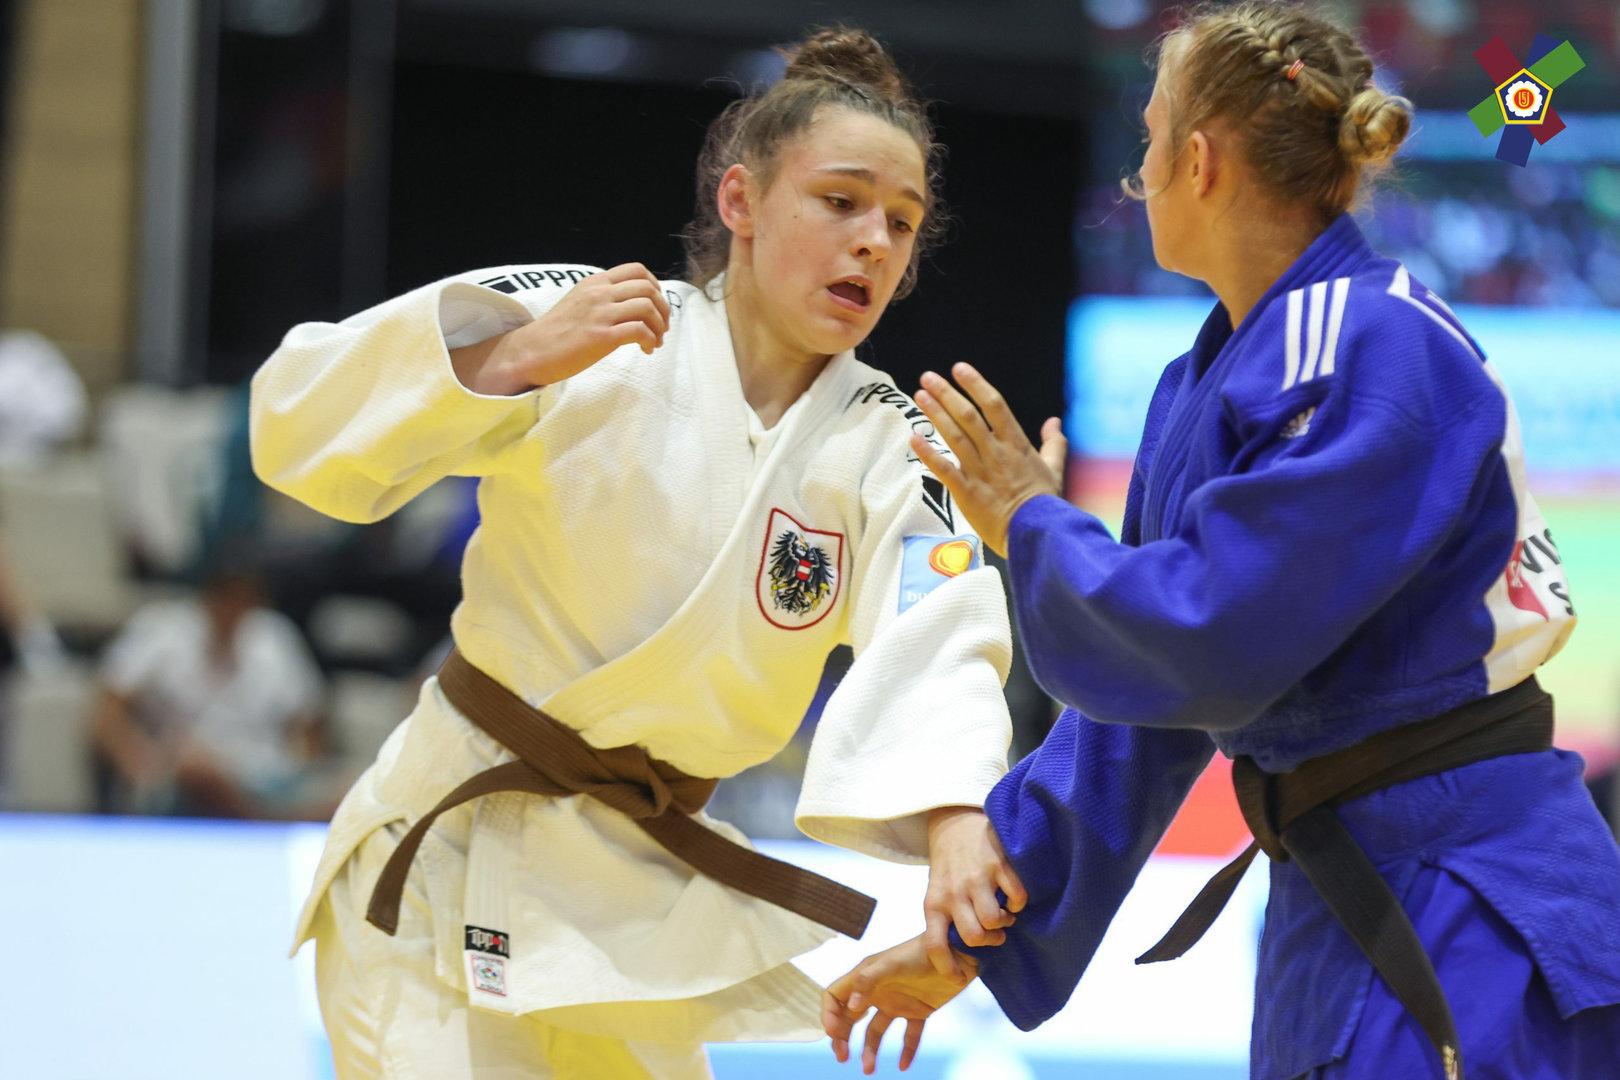 16-Jährige aus Mautern erreicht zweiten Platz in U18-Judoka-WM